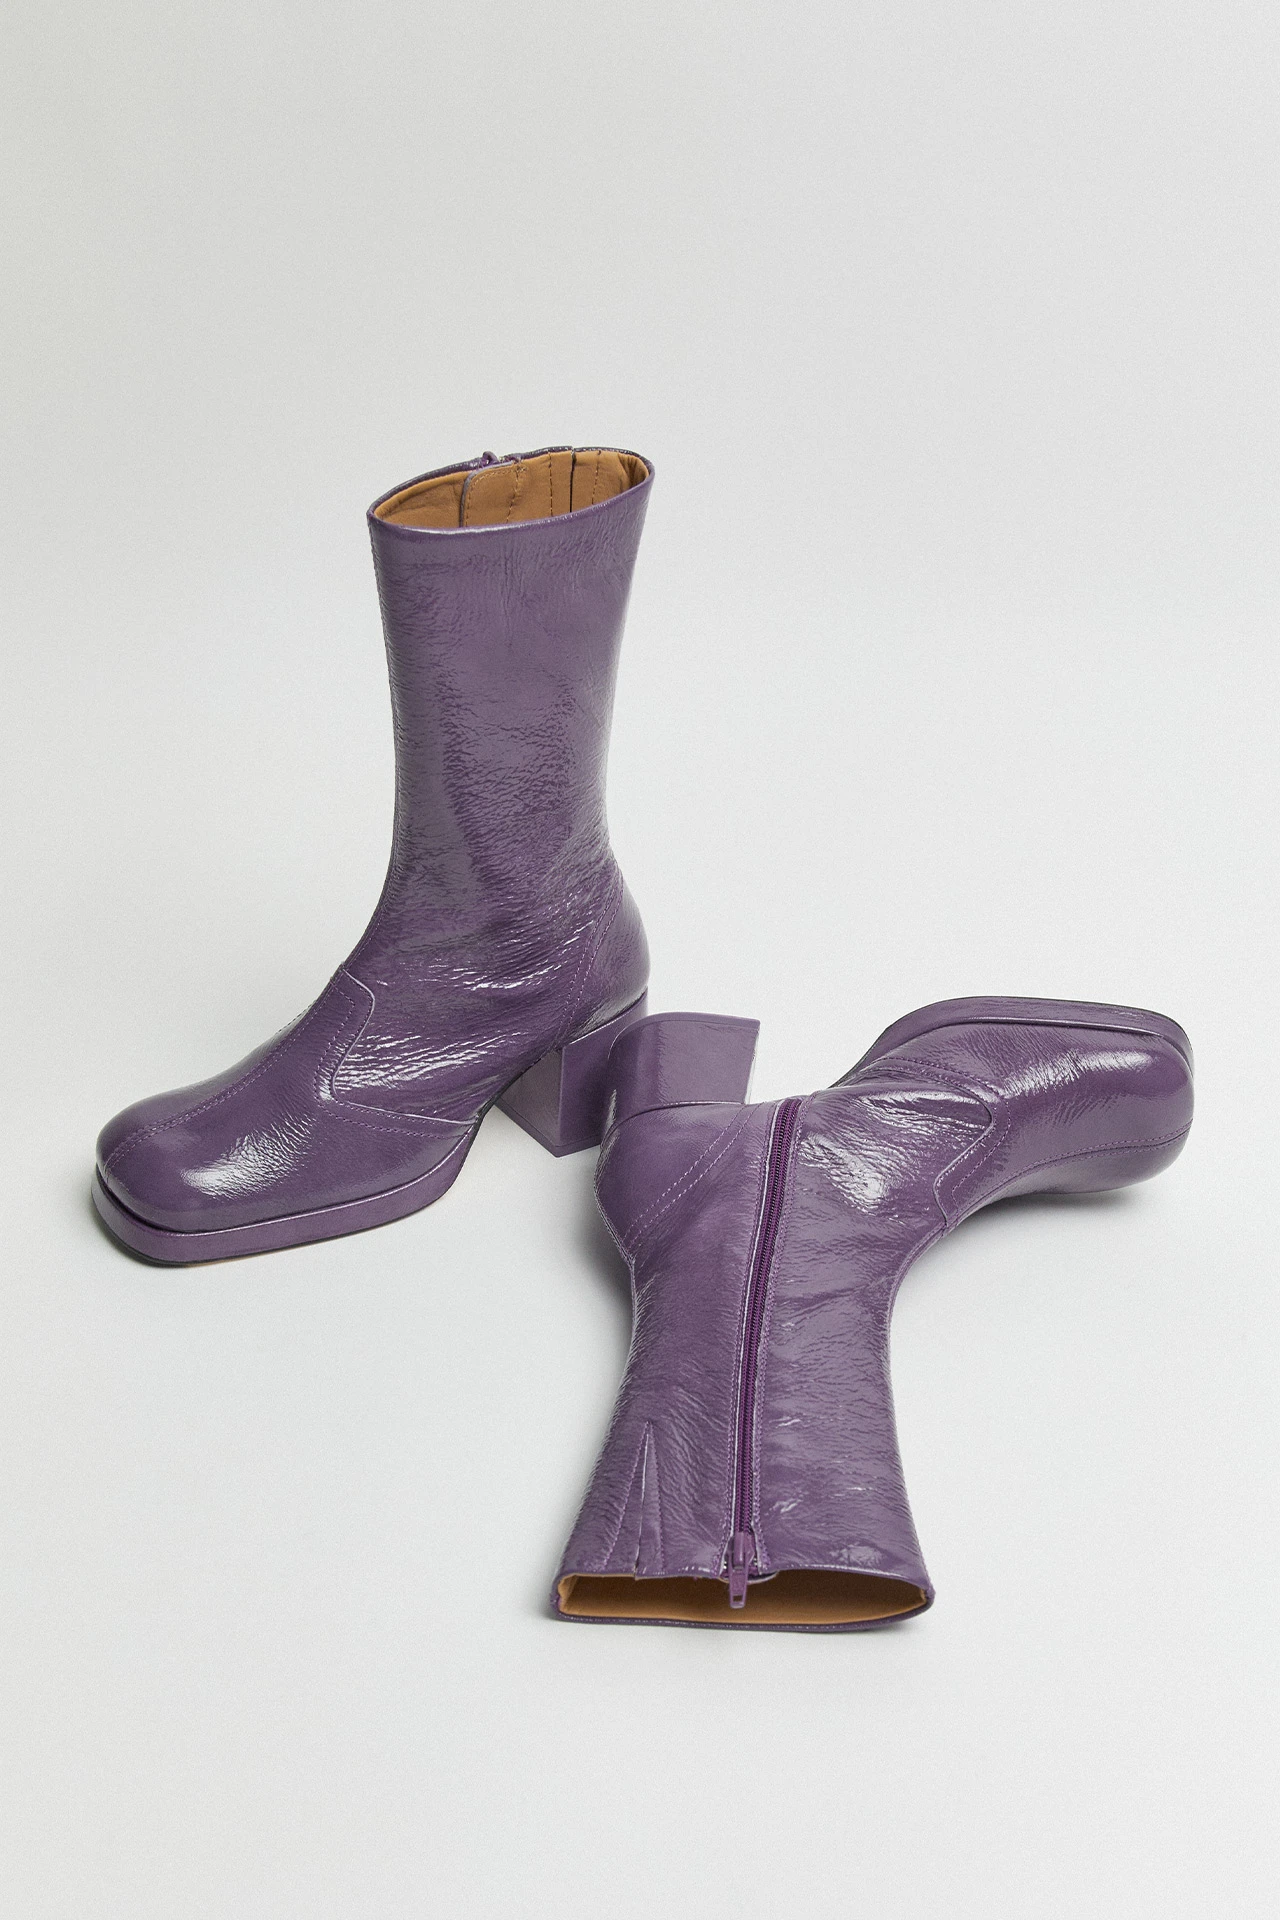 Miista-cass-purple-boots-02